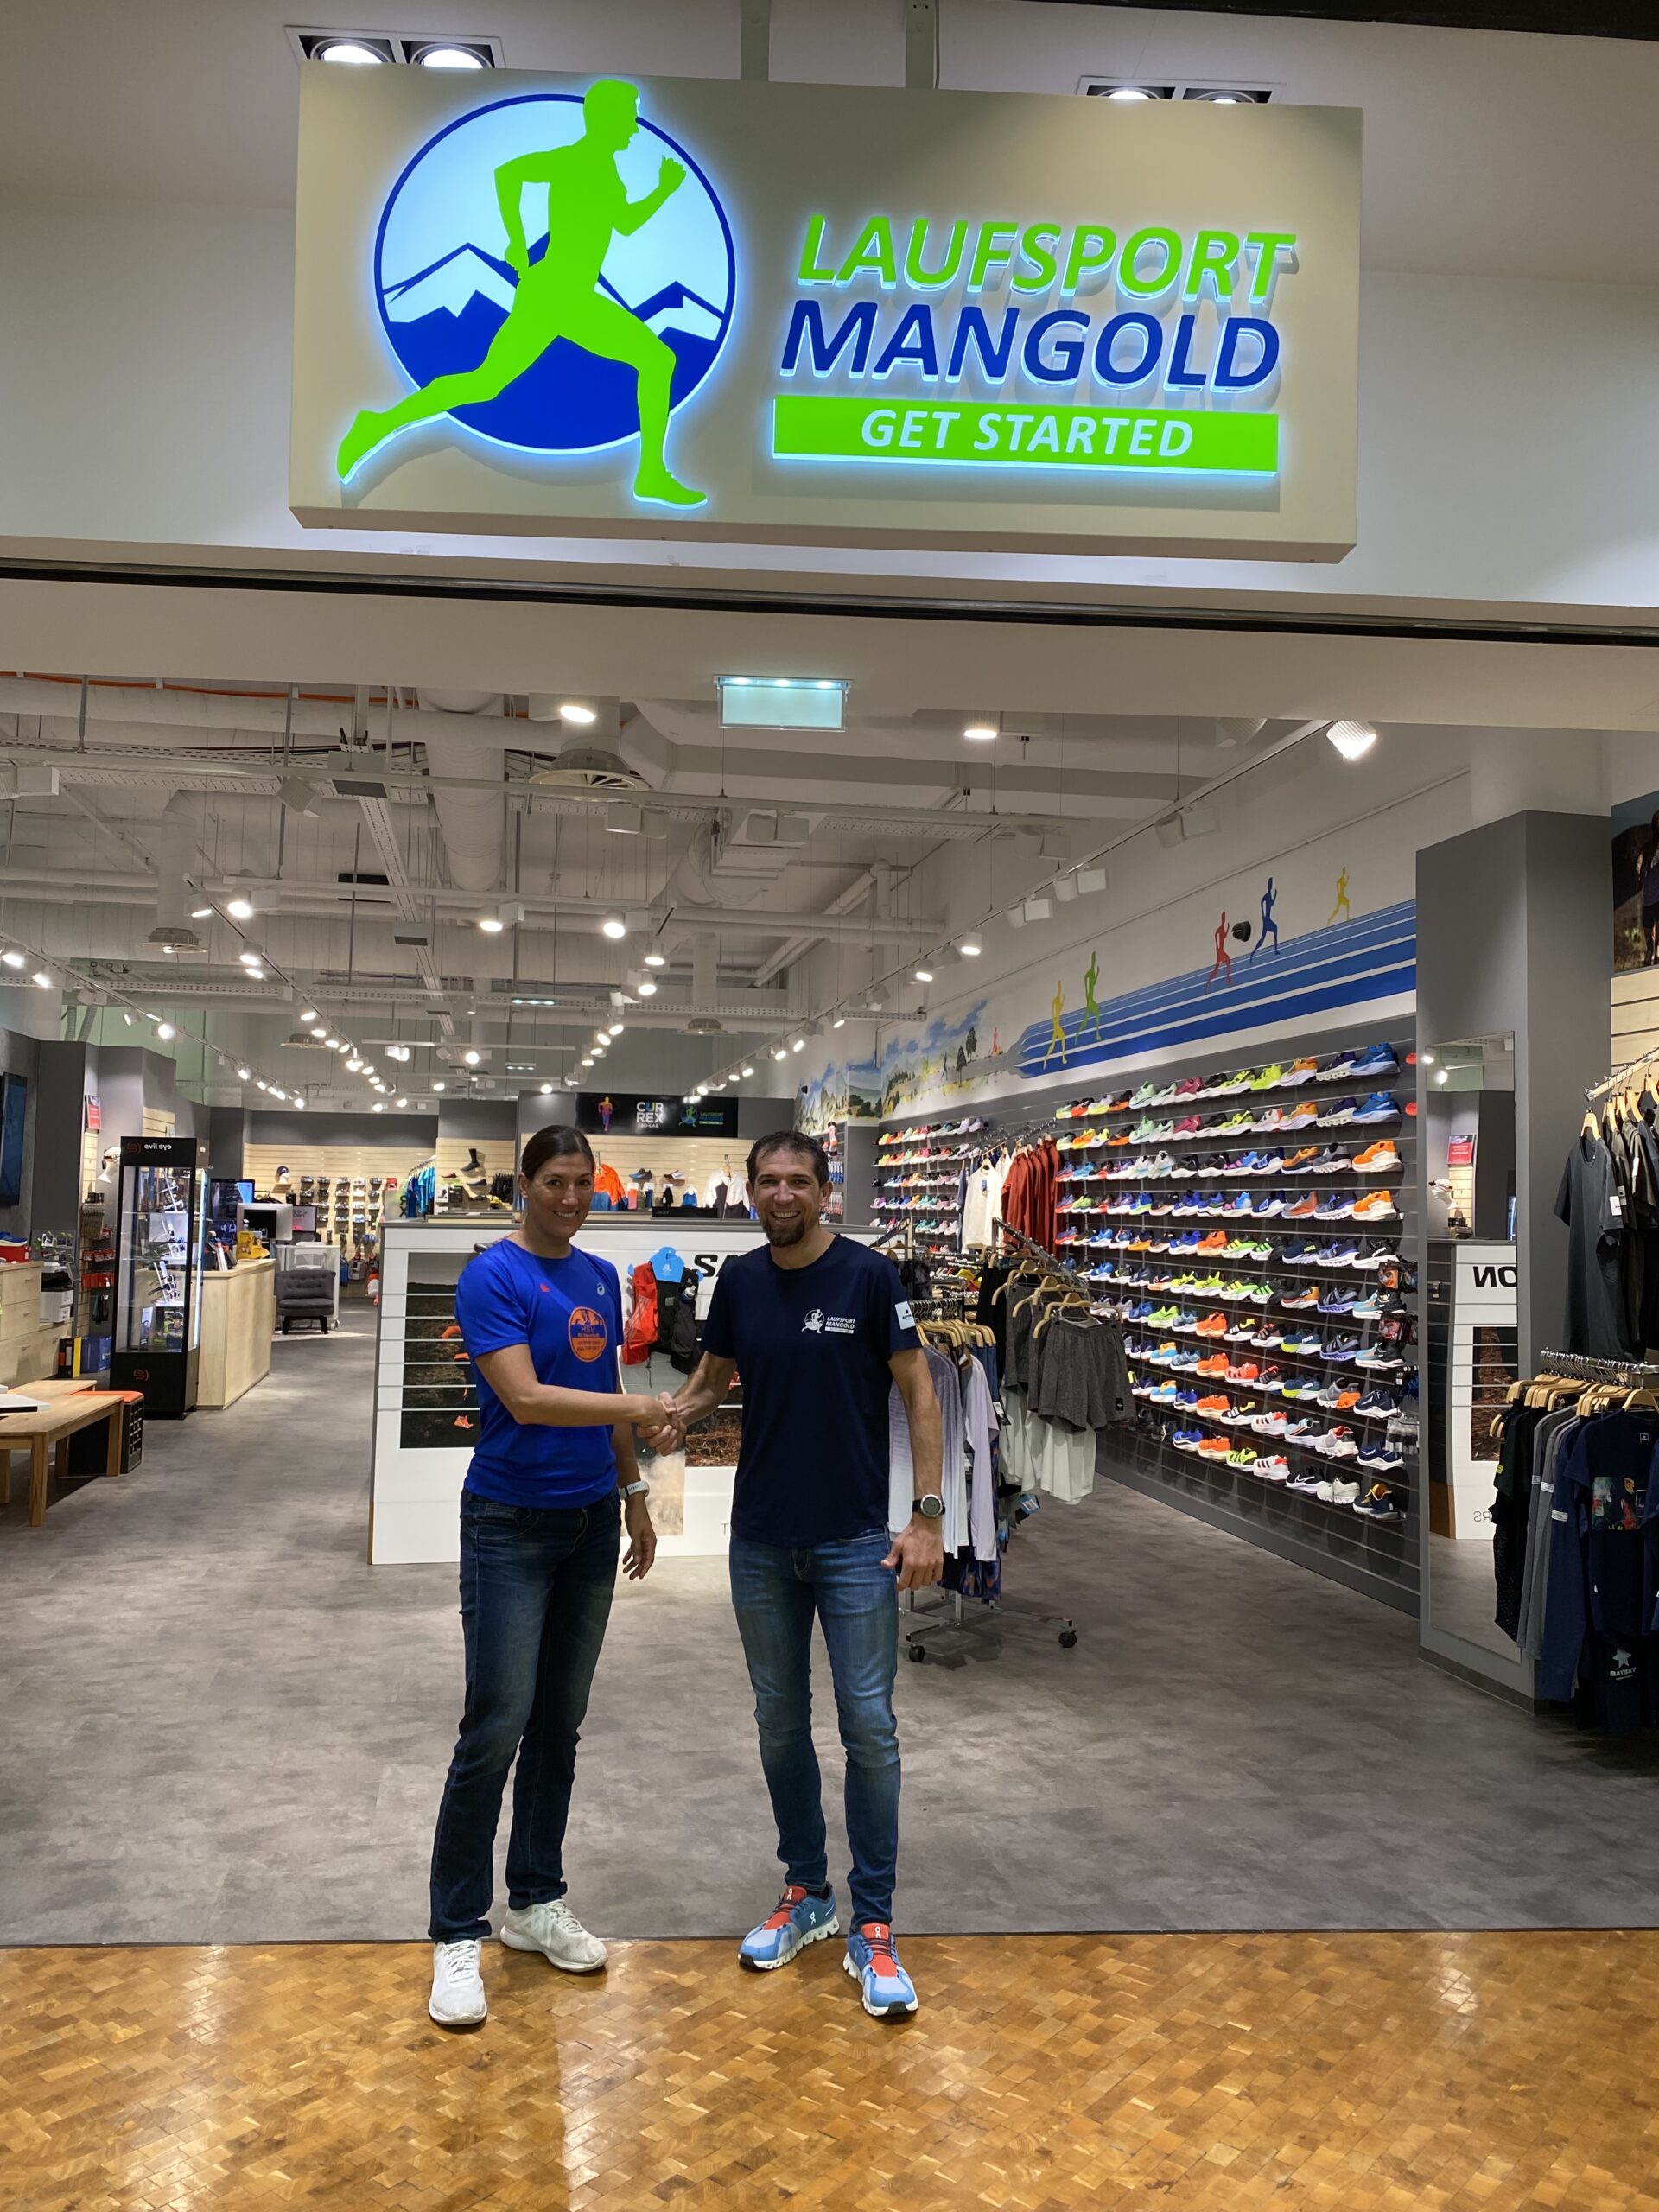 Neuer Sponsor – Laufsport Mangold!